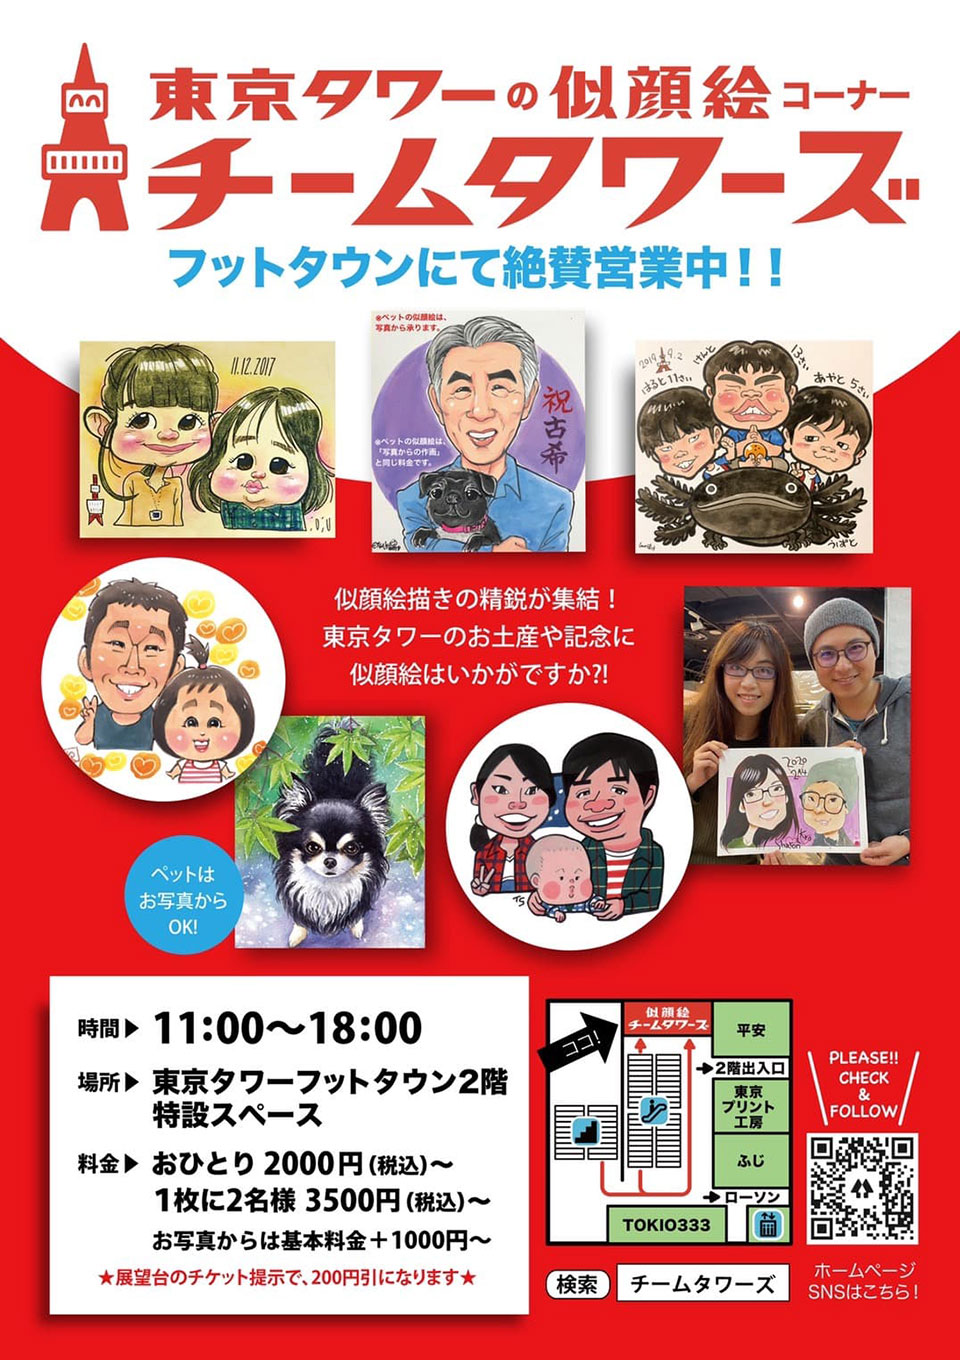 "Portrait Corner" is being held at Tokyo Tower Foot Town!